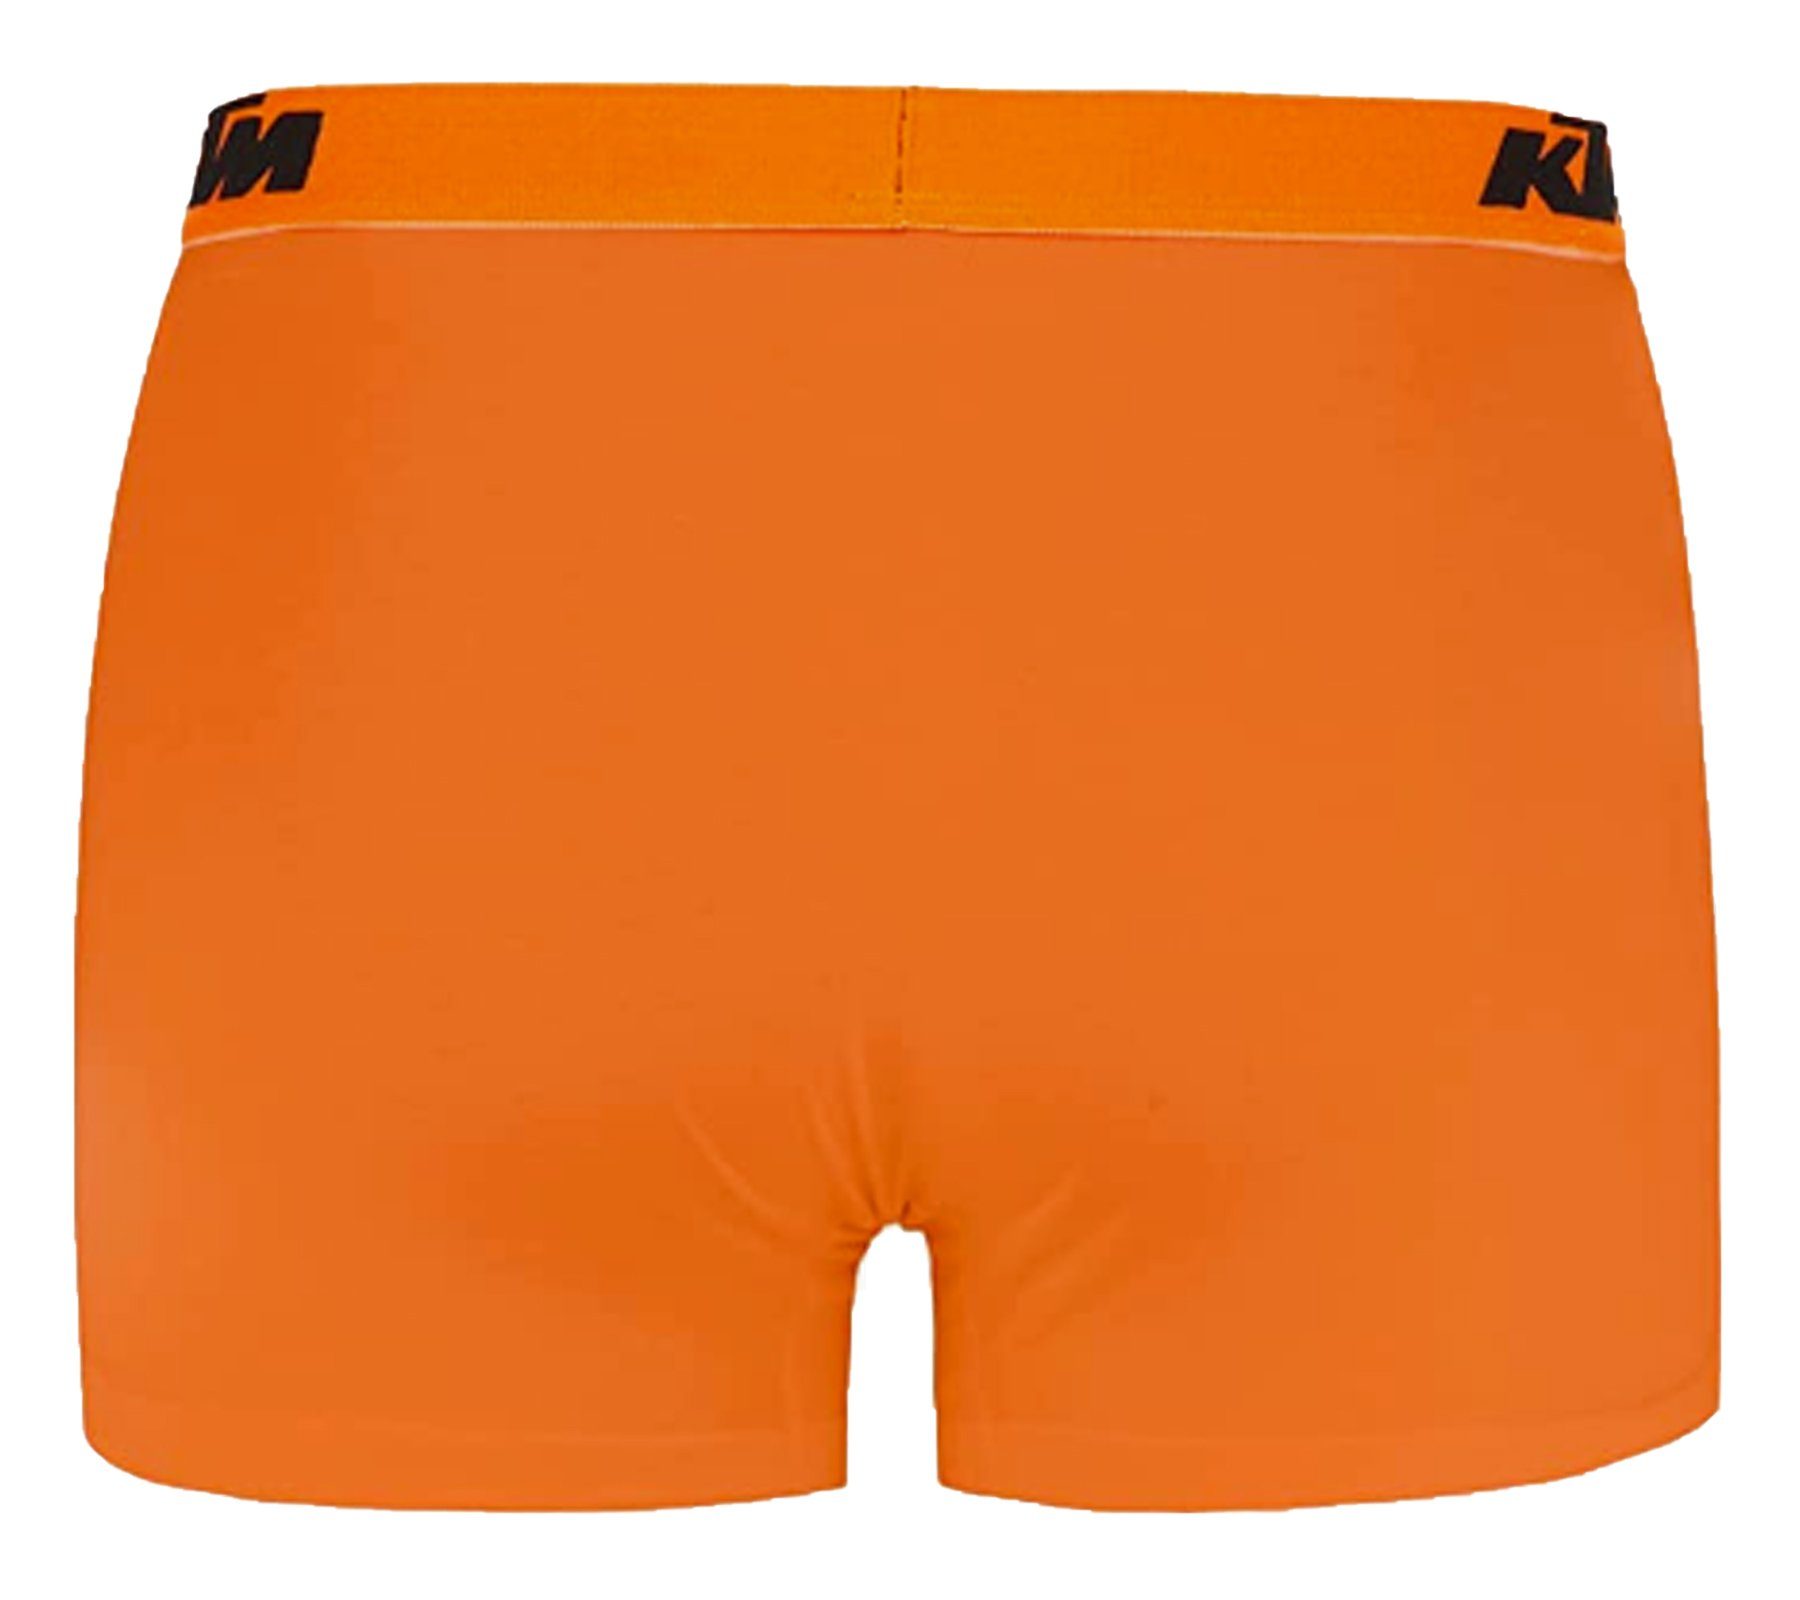 Herren Dunkelgrau/Orange Unterwäsche Unterhose 1BCX2ASS2D KTM 2er Boxershorts Orange2 / Pack KTM GOR Boxershorts Grey mit Logoprint Dark knallige